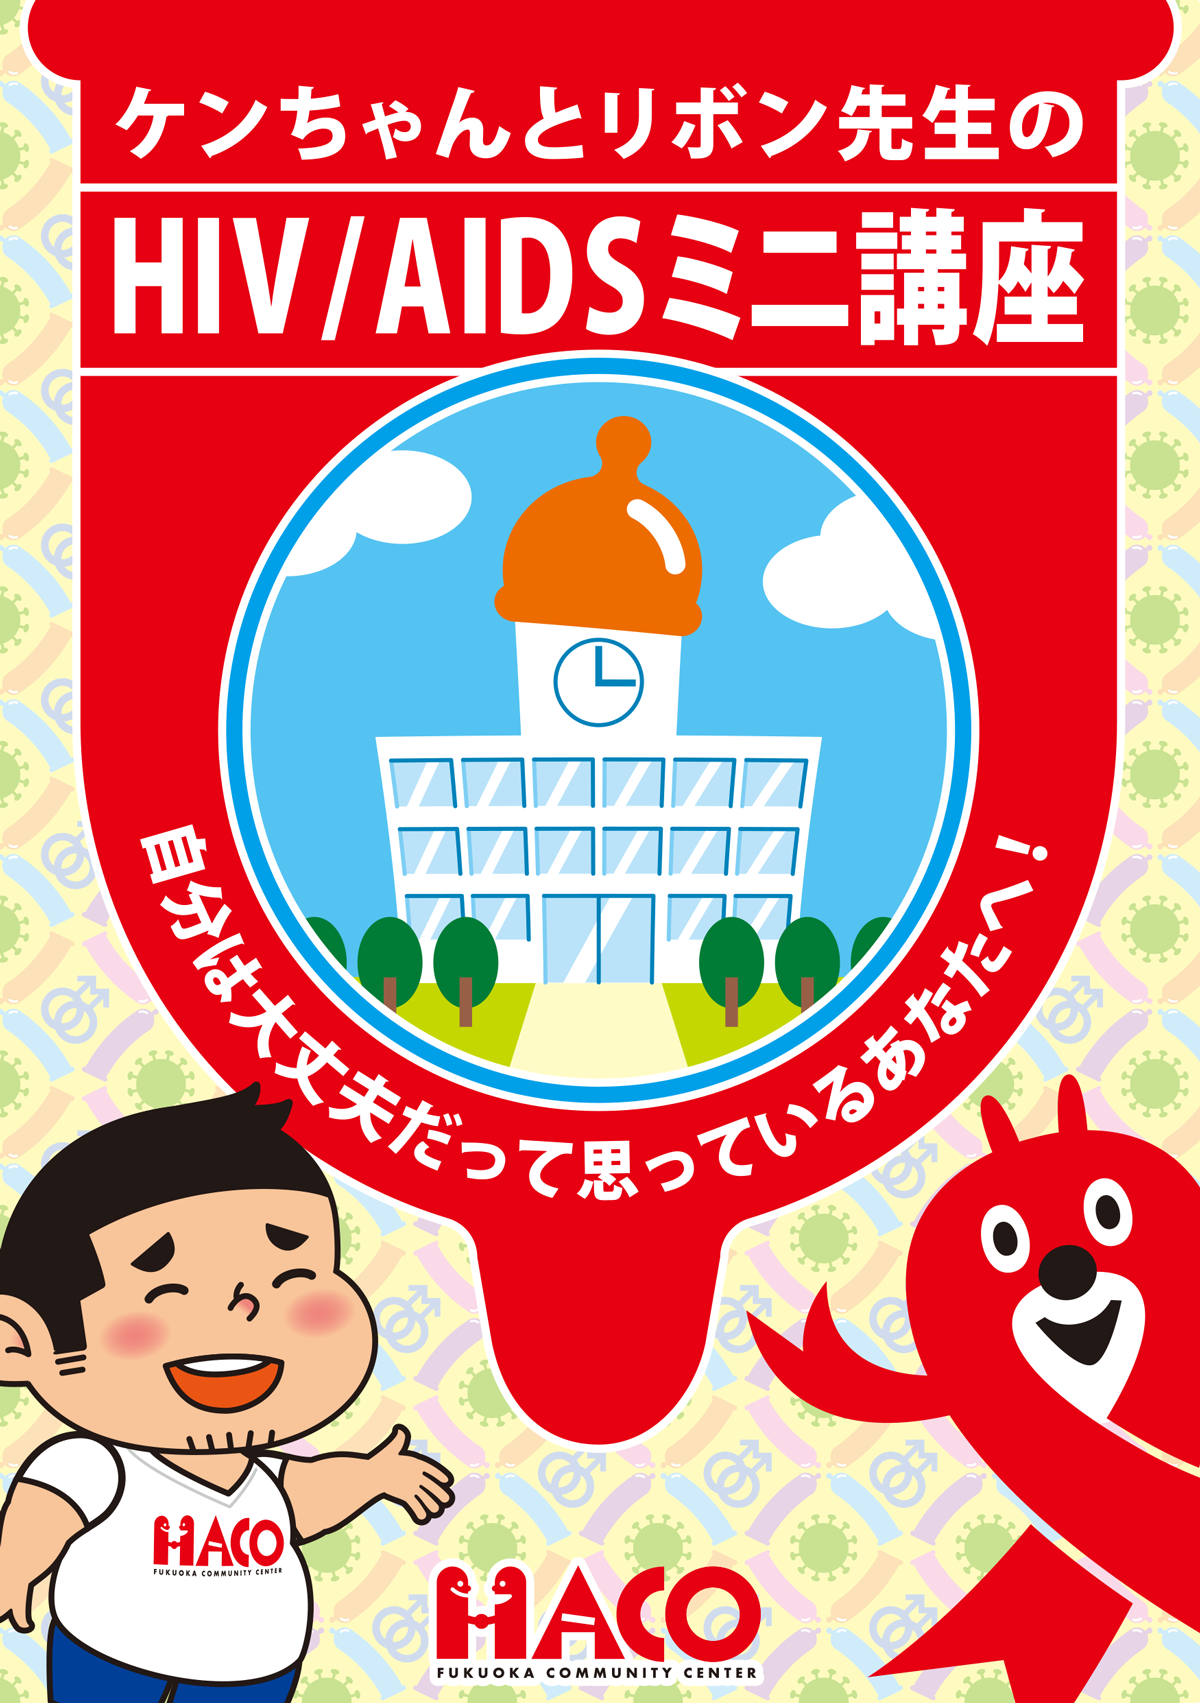 ケンちゃんとリボン先生のHIV/AIDSミニ講座・表紙